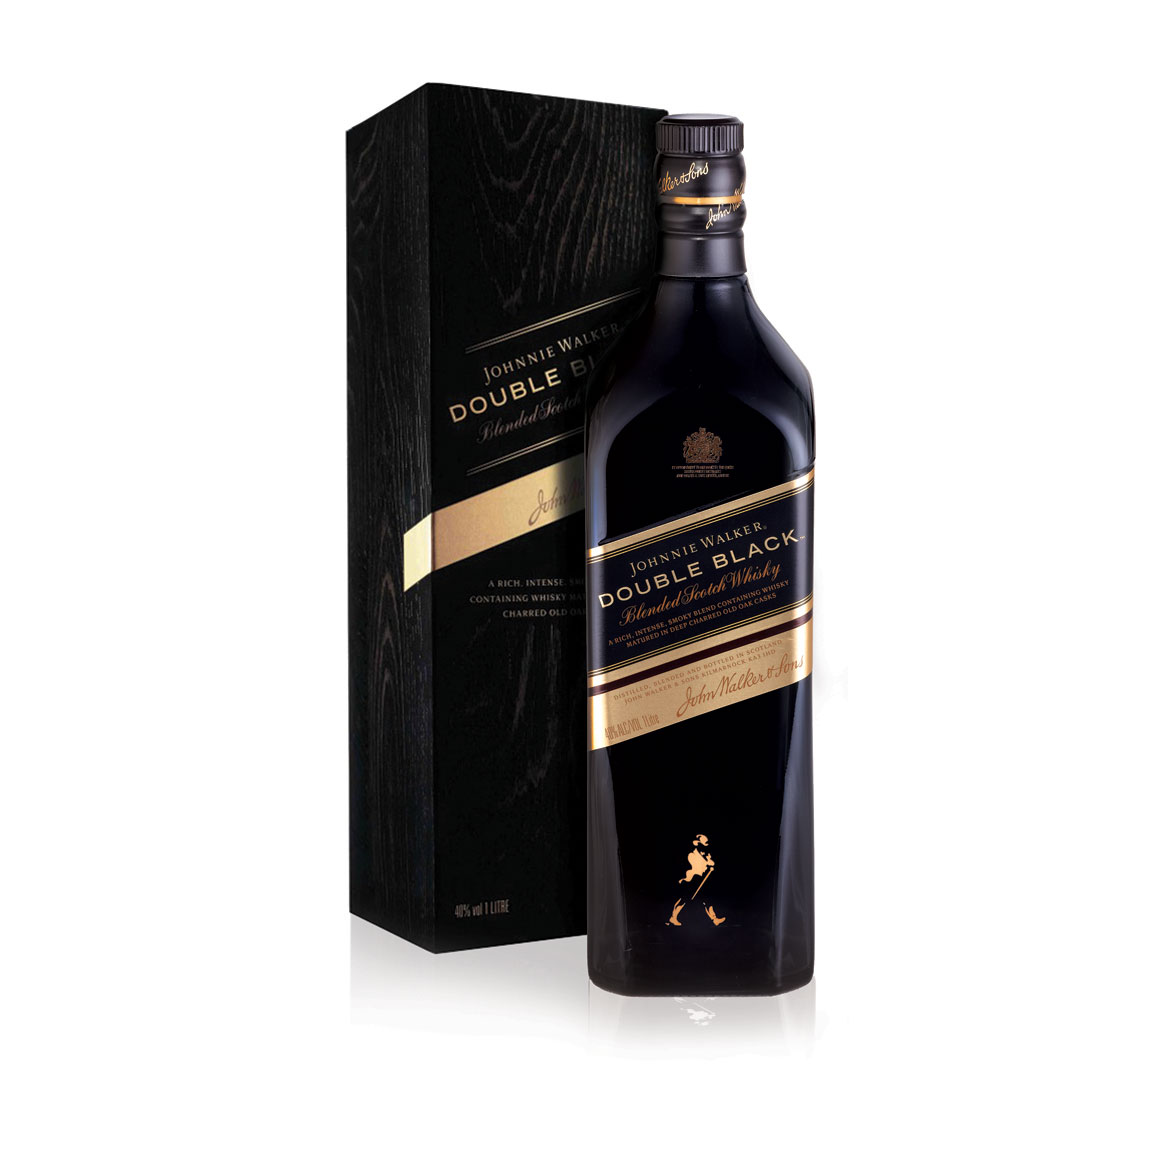 Rượu Johnnie Walker Double Black được chế tác cho những người sành Whisky và yêu hương vị mạnh mẽ, đậm mùi khói